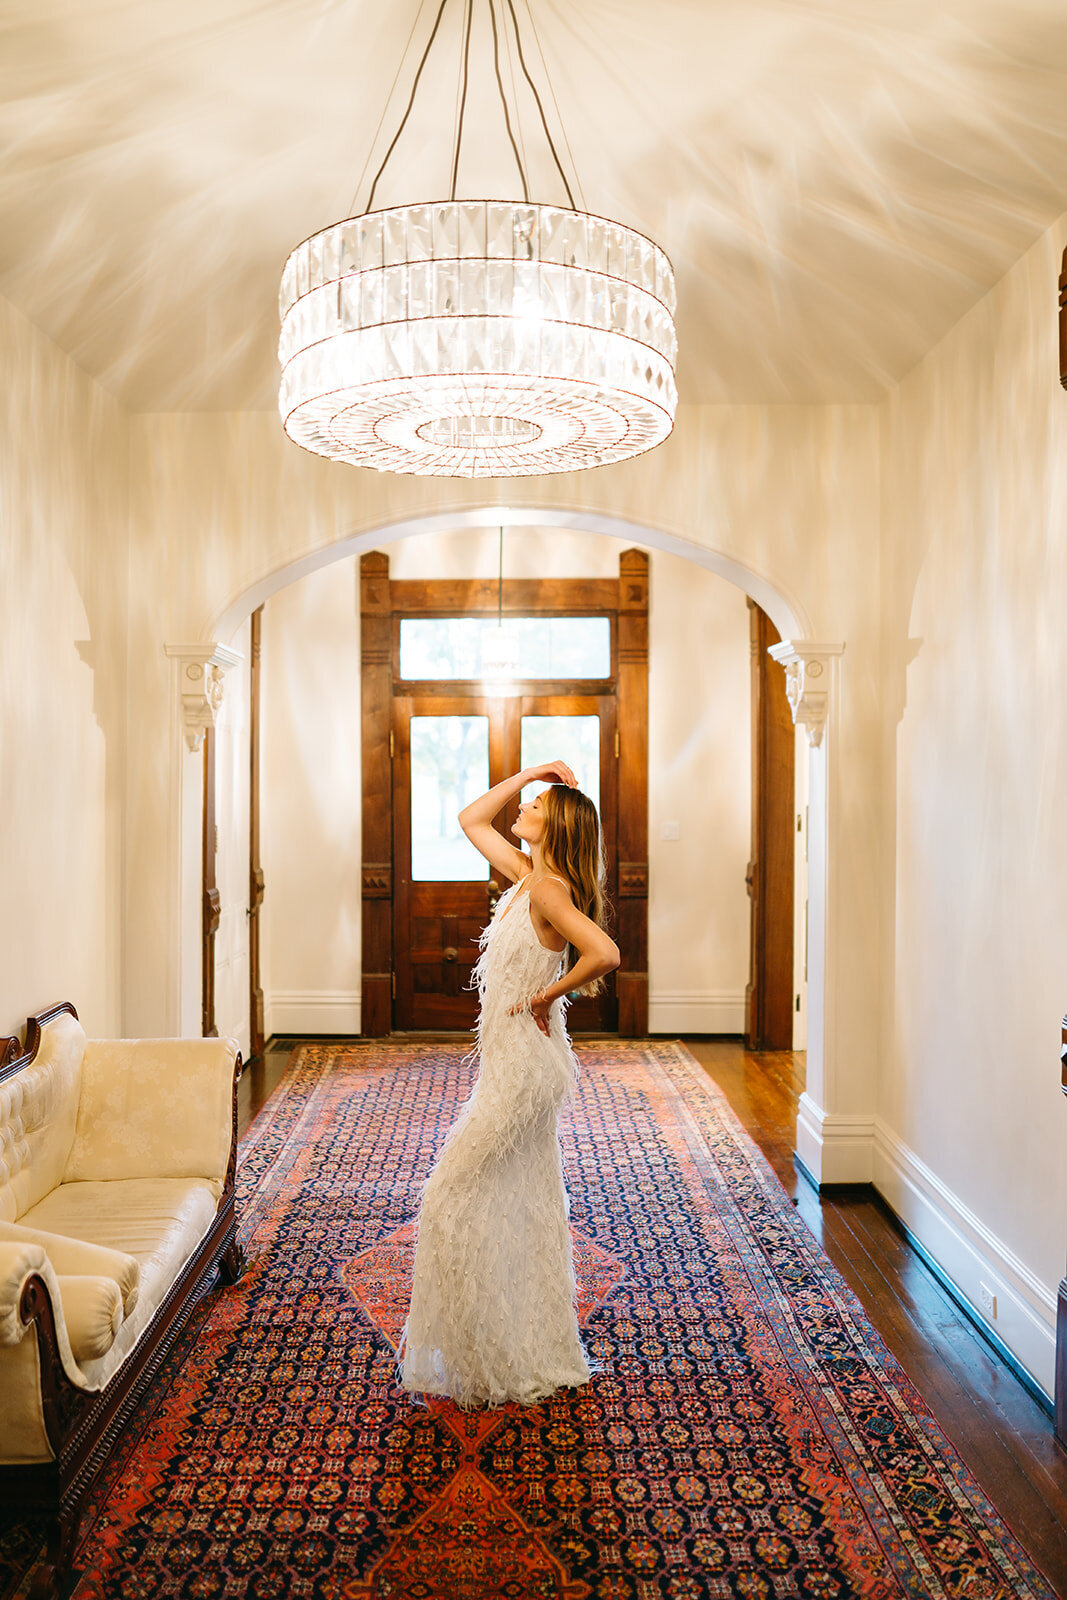 Heartland of Versailles - Historic Victorian Wedding Venue in Kentcuky - Bride in Entry Hall